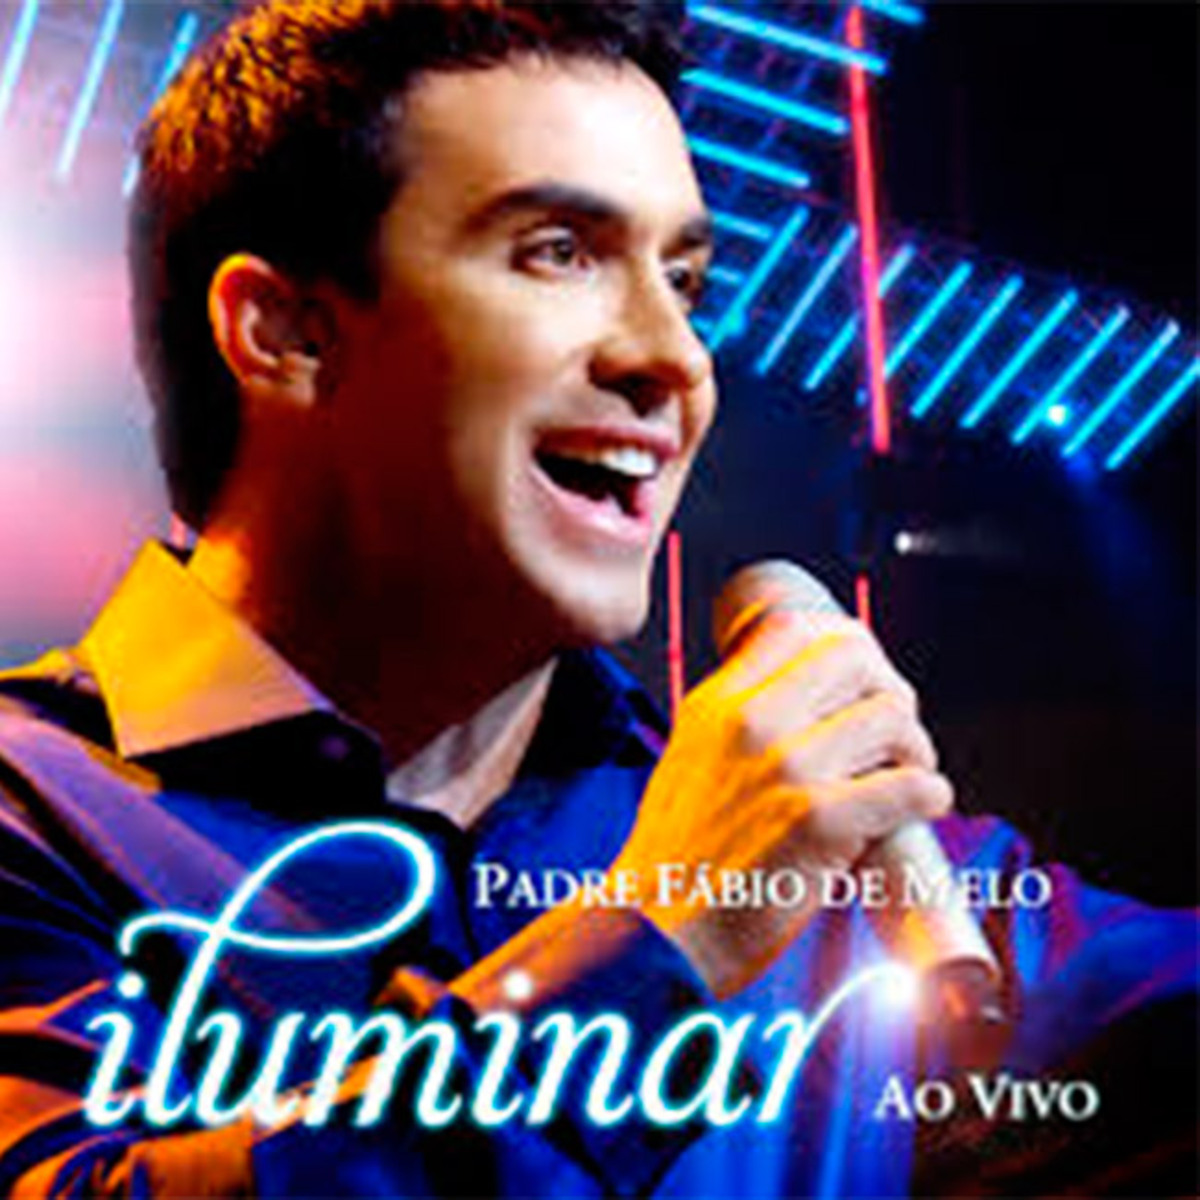 CD.PE.Fabio de Melo-Iluminar(AO VIVO)